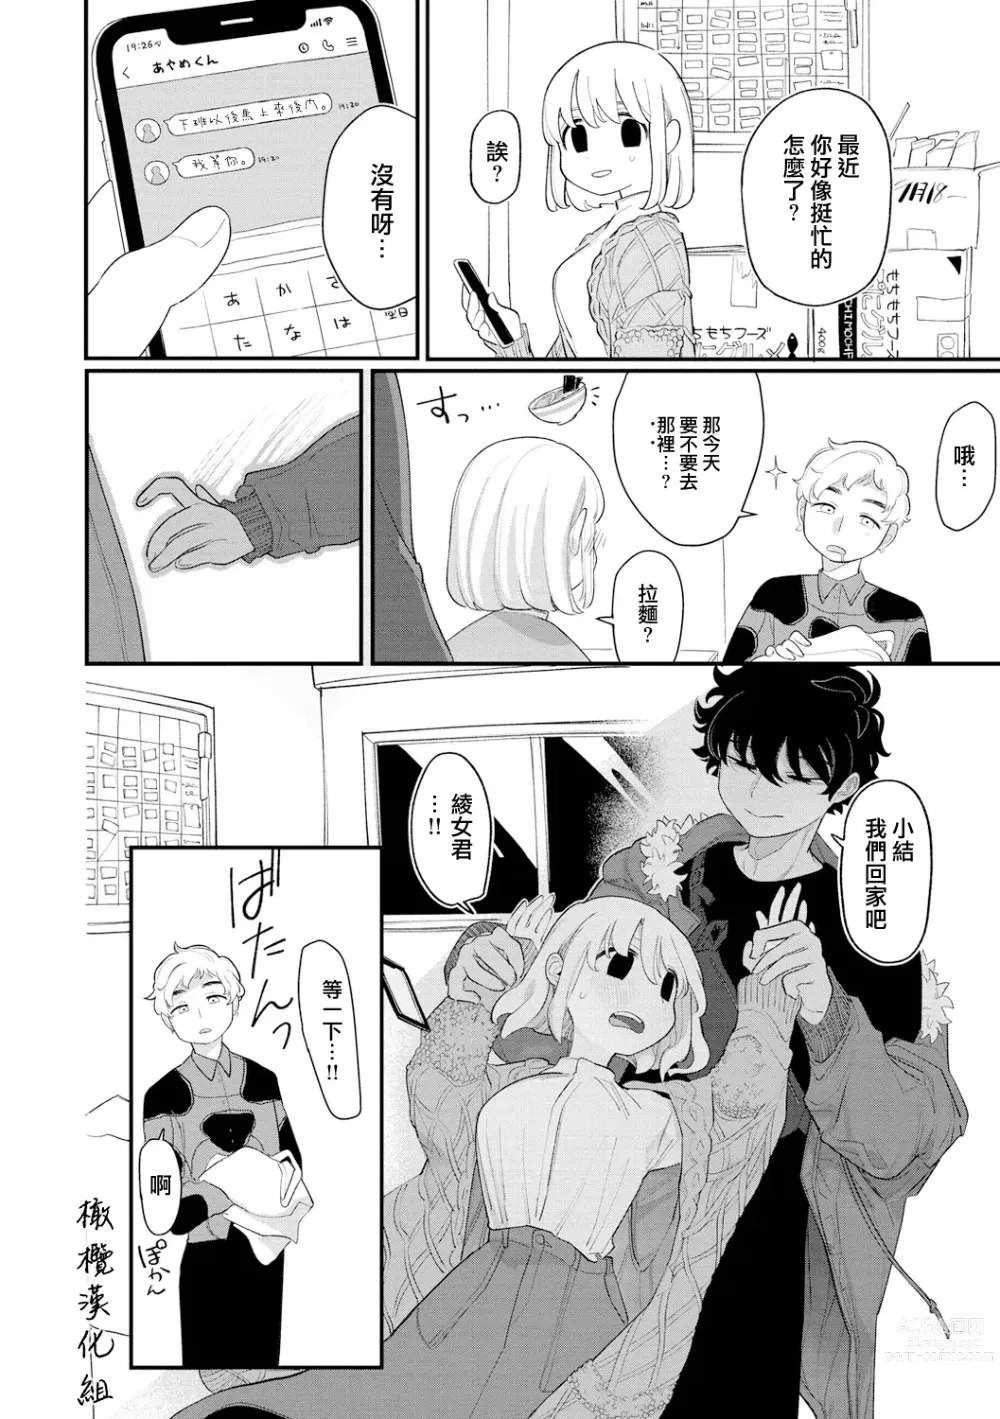 Page 16 of manga 好好相处吧